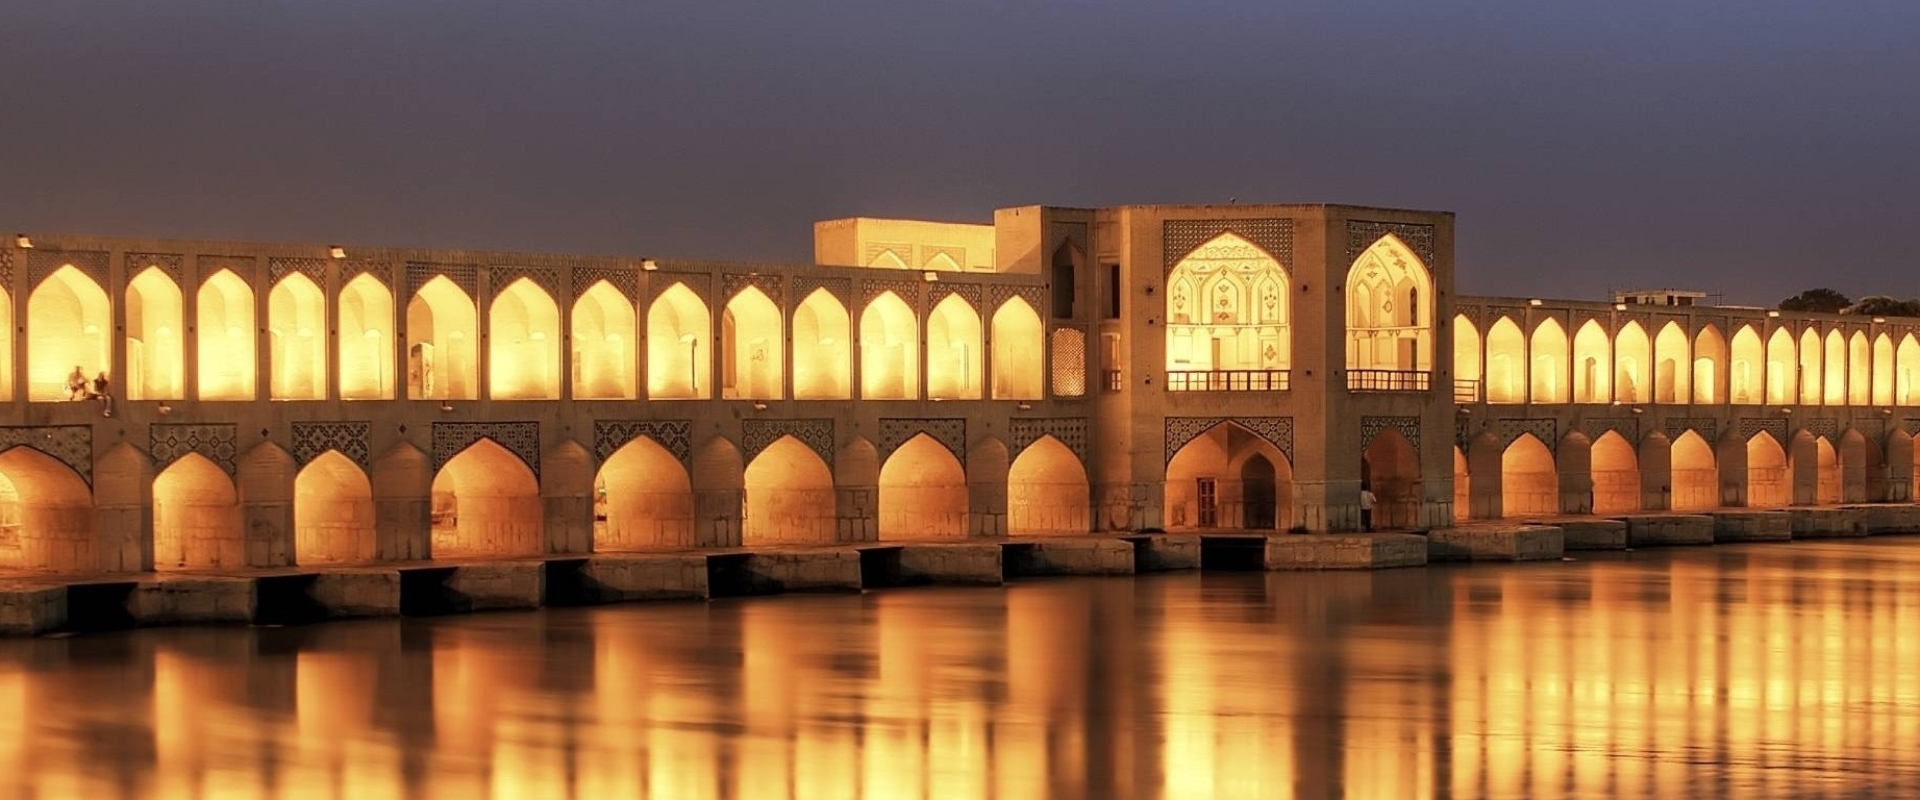 khaju_bridge_at_dusk_isfahan_iran-wallpaper-2560×768